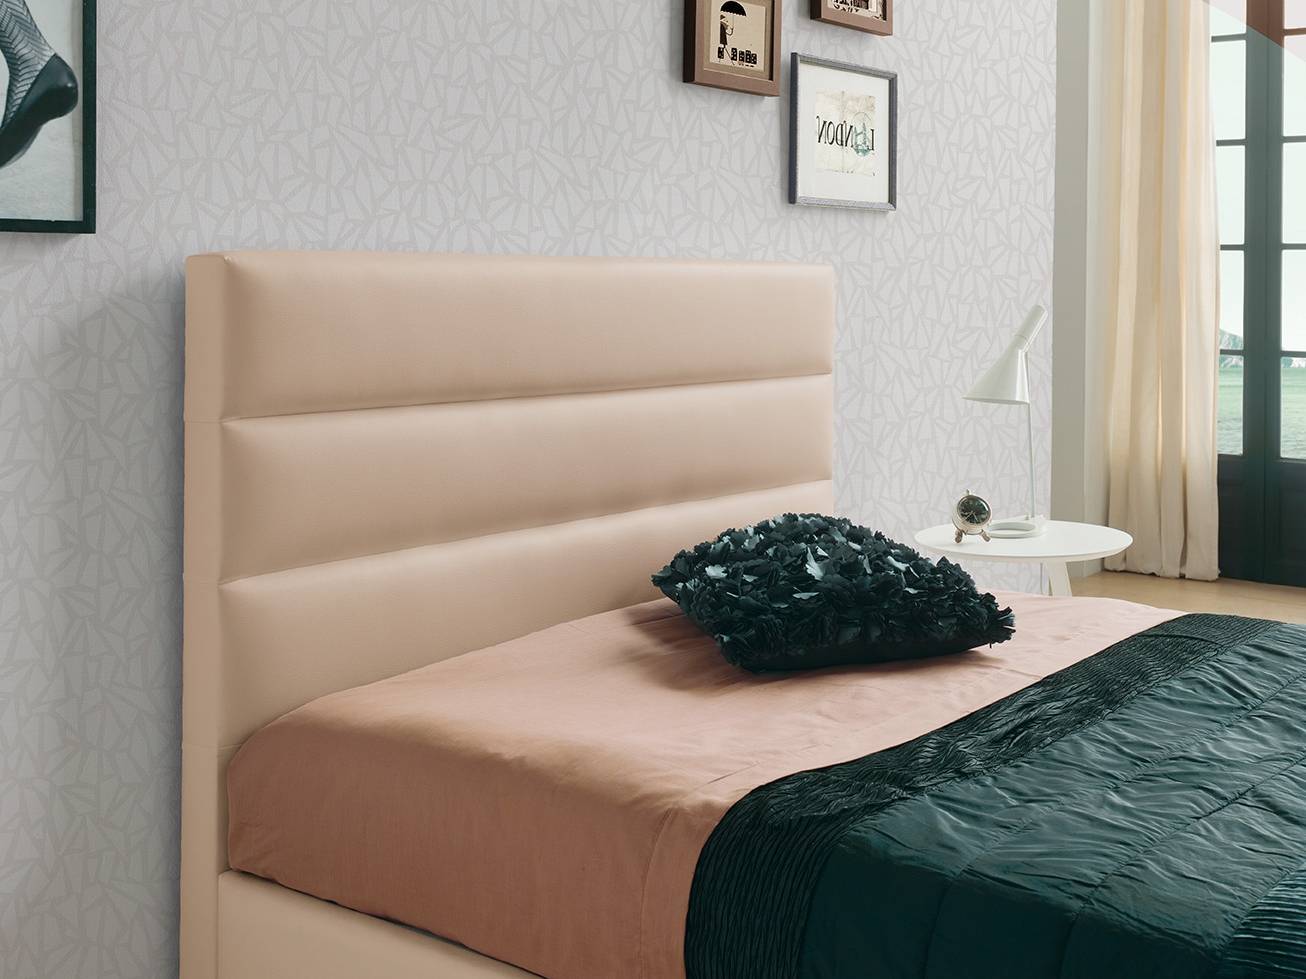 Cama Abatible LD Lidia - Cama con canapé abatible tapizada en polipiel, tela o terciopelo. Disponible en varios tamaños y colores.